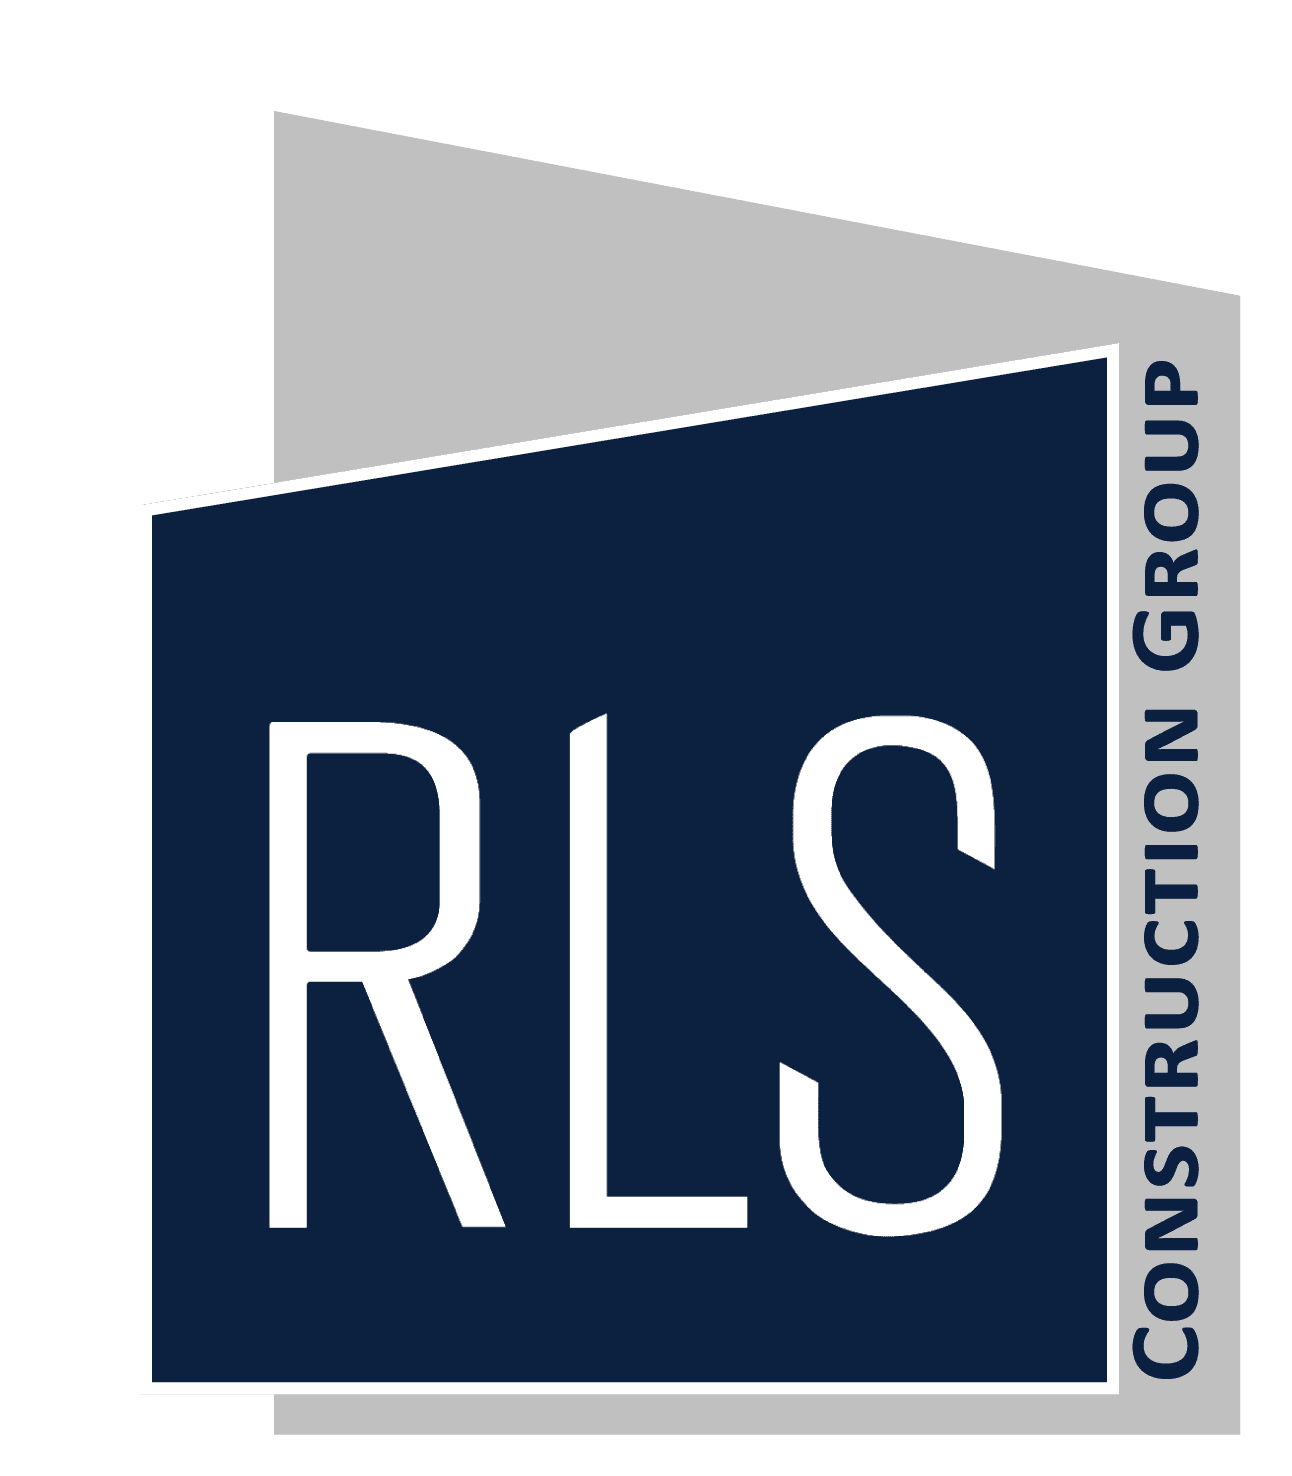 RLS Logo